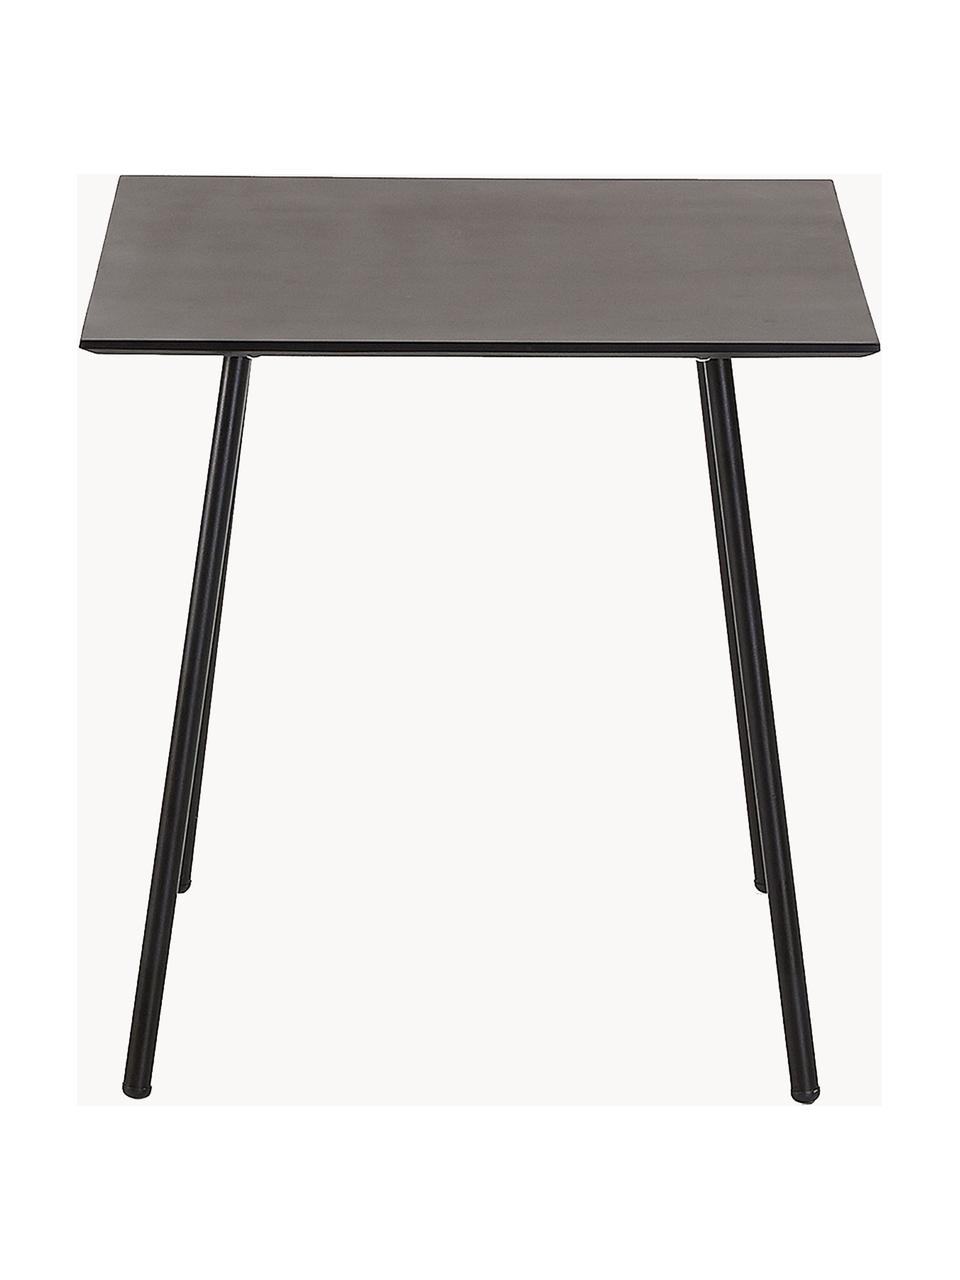 Malý kovový stůl Mathis, 75 x 75 cm, Černá, Š 75 cm, V 75 cm